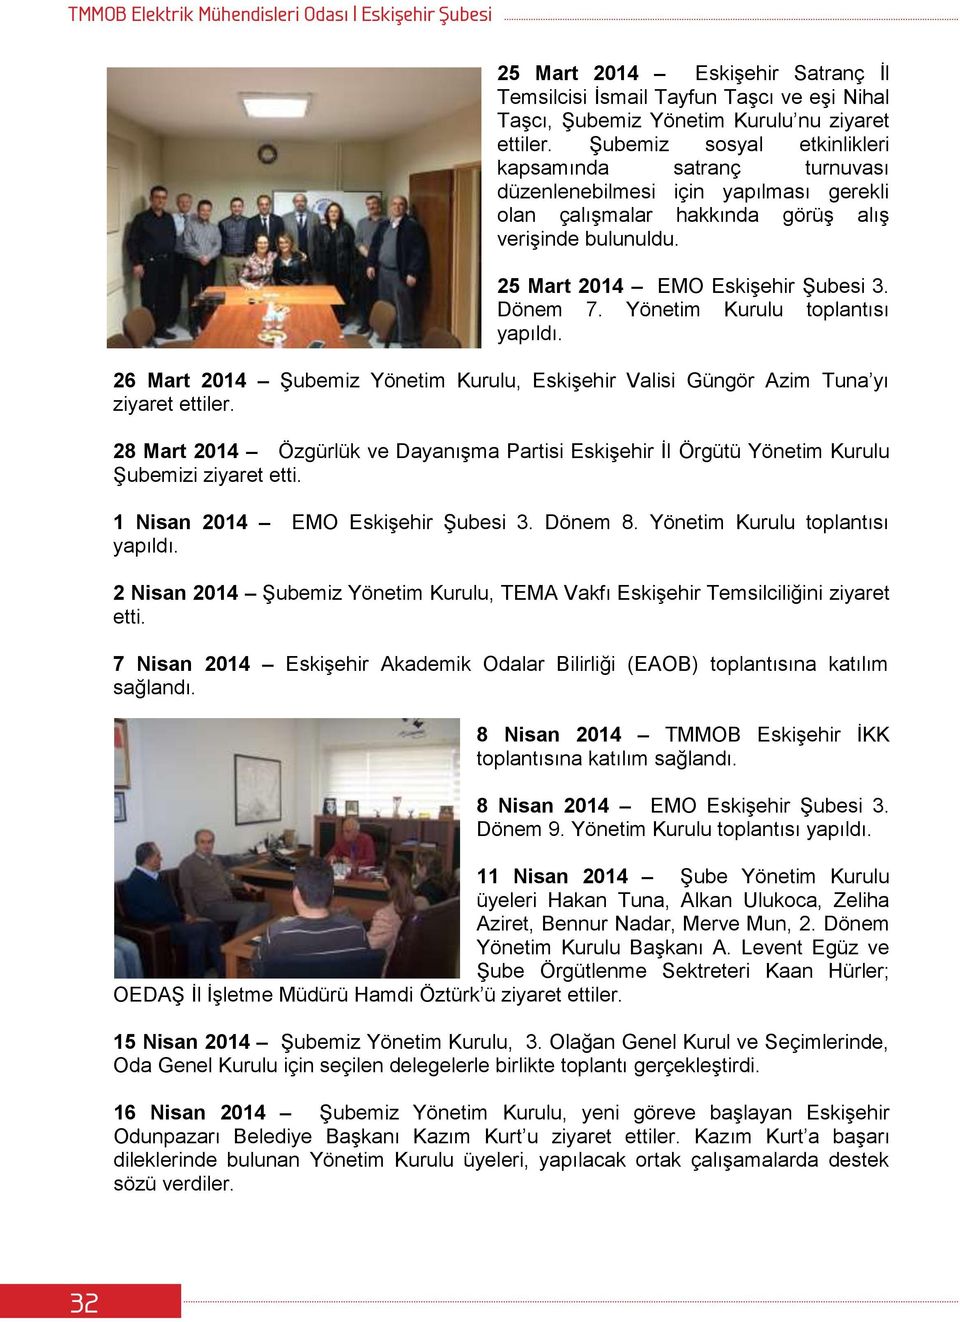 Yönetim Kurulu toplantısı 26 Mart 2014 Şubemiz Yönetim Kurulu, Eskişehir Valisi Güngör Azim Tuna yı ziyaret ettiler.